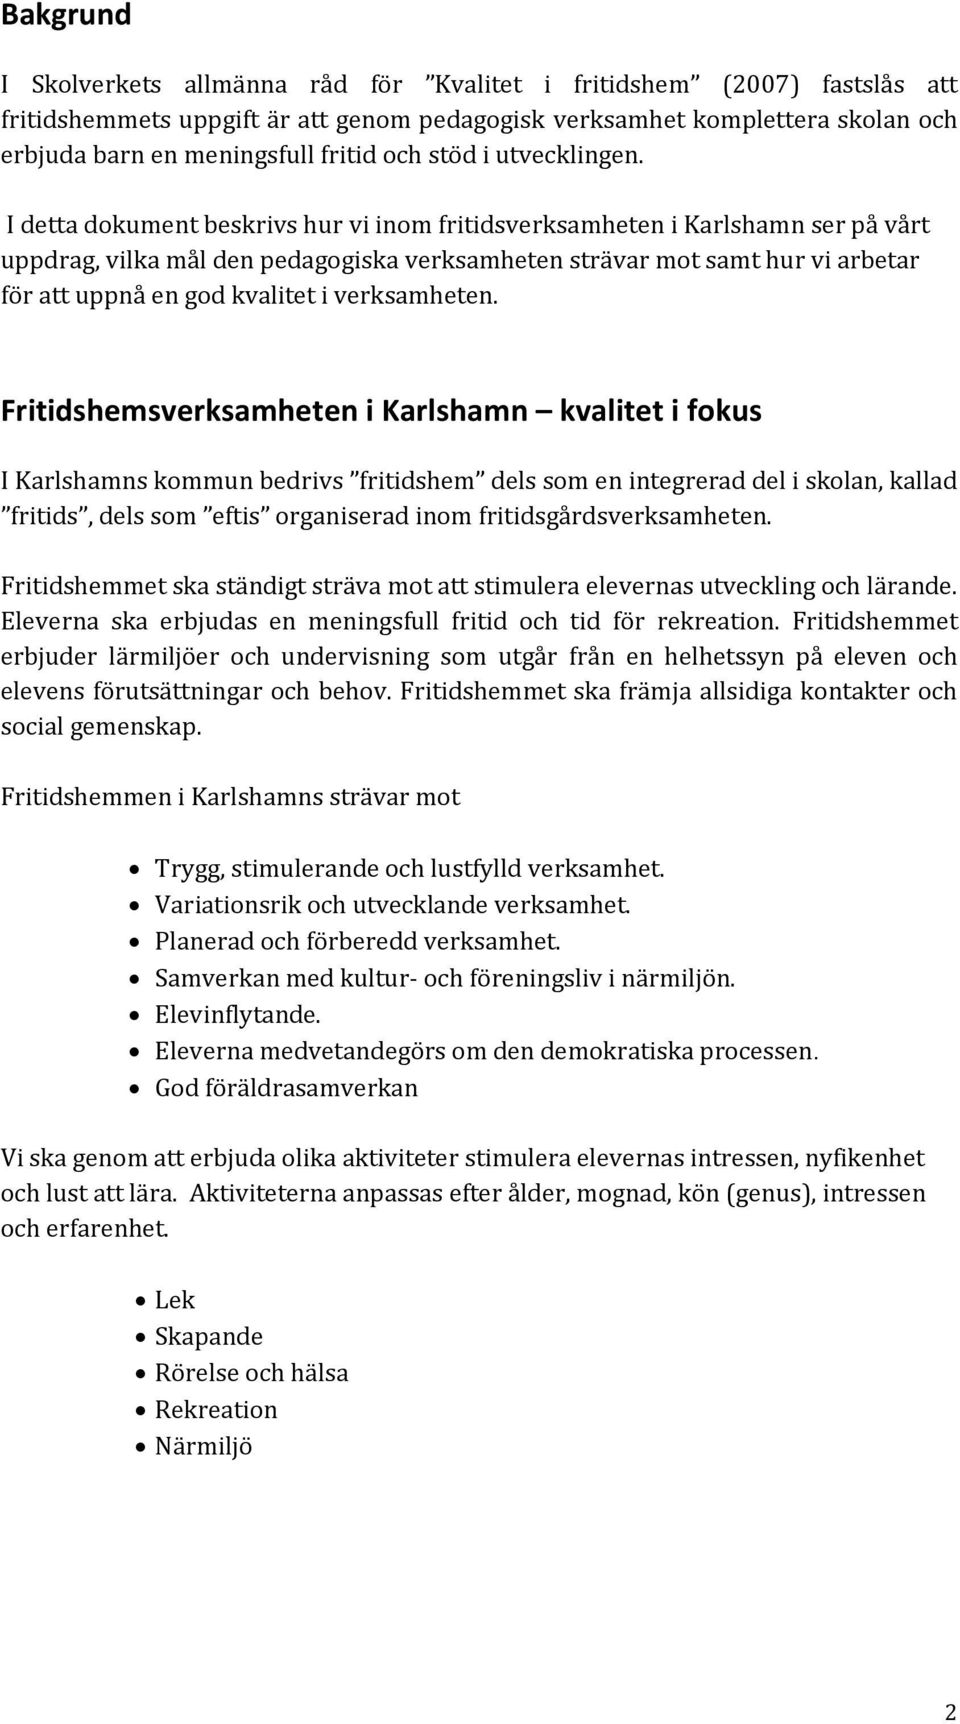 I detta dokument beskrivs hur vi inom fritidsverksamheten i Karlshamn ser på vårt uppdrag, vilka mål den pedagogiska verksamheten strävar mot samt hur vi arbetar för att uppnå en god kvalitet i